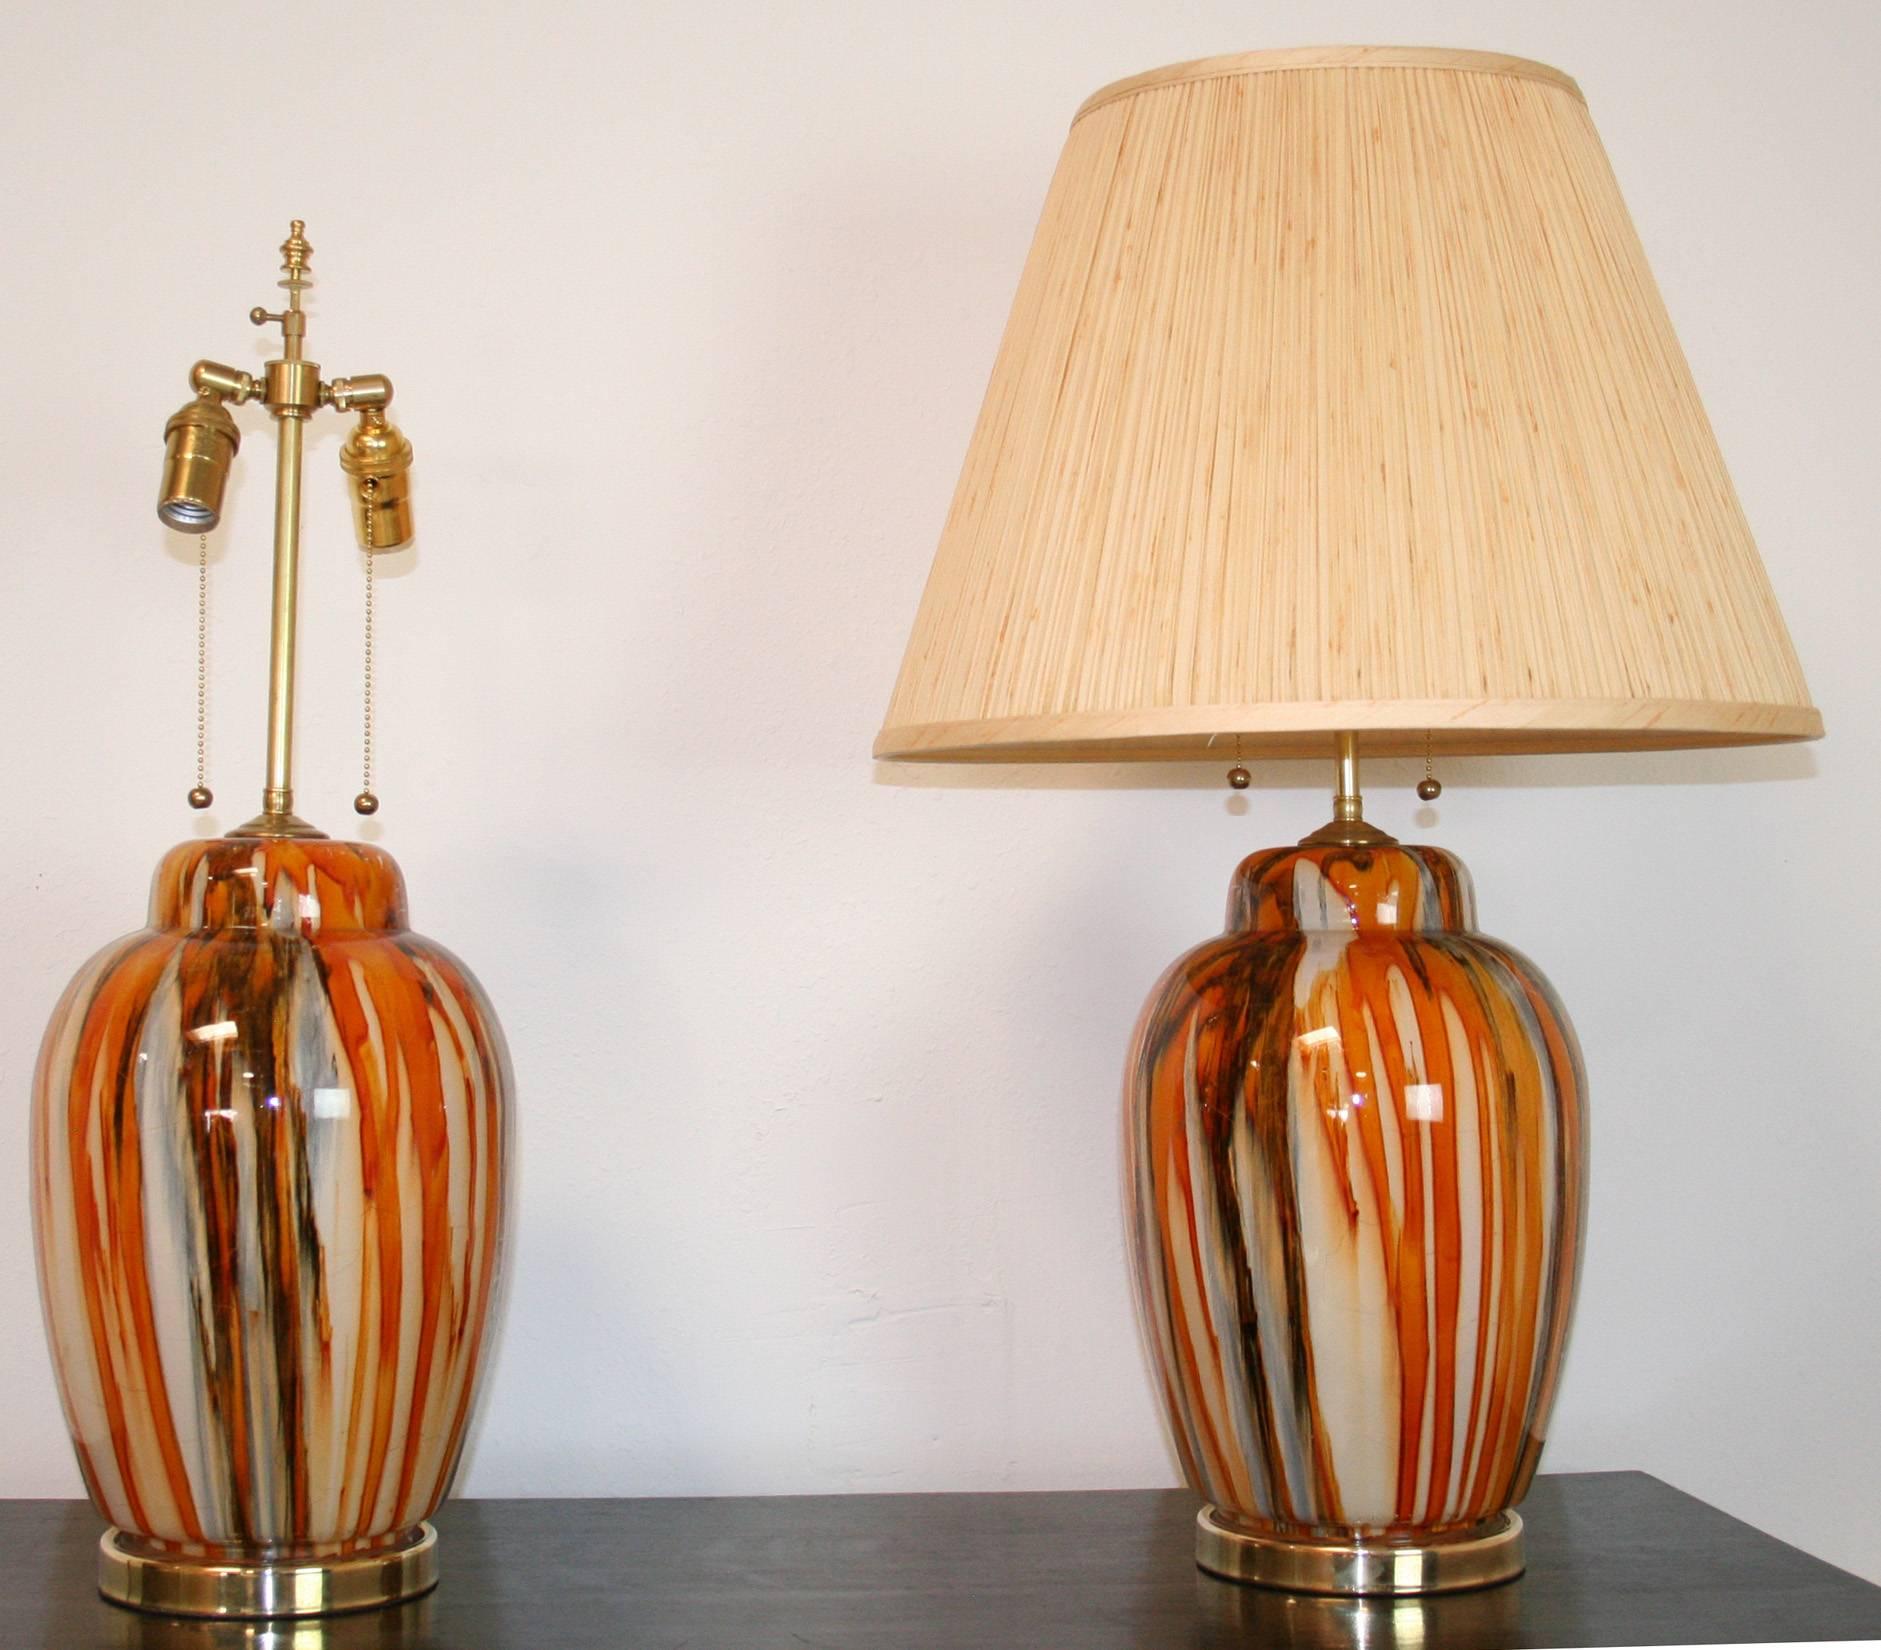 Une paire de lampes en verre italiennes des années 1980 en crème, orange et brun. Recâblage avec de nouvelles prises de courant à double faisceau. Nuances pour l'affichage uniquement. Style moderne du milieu du siècle.